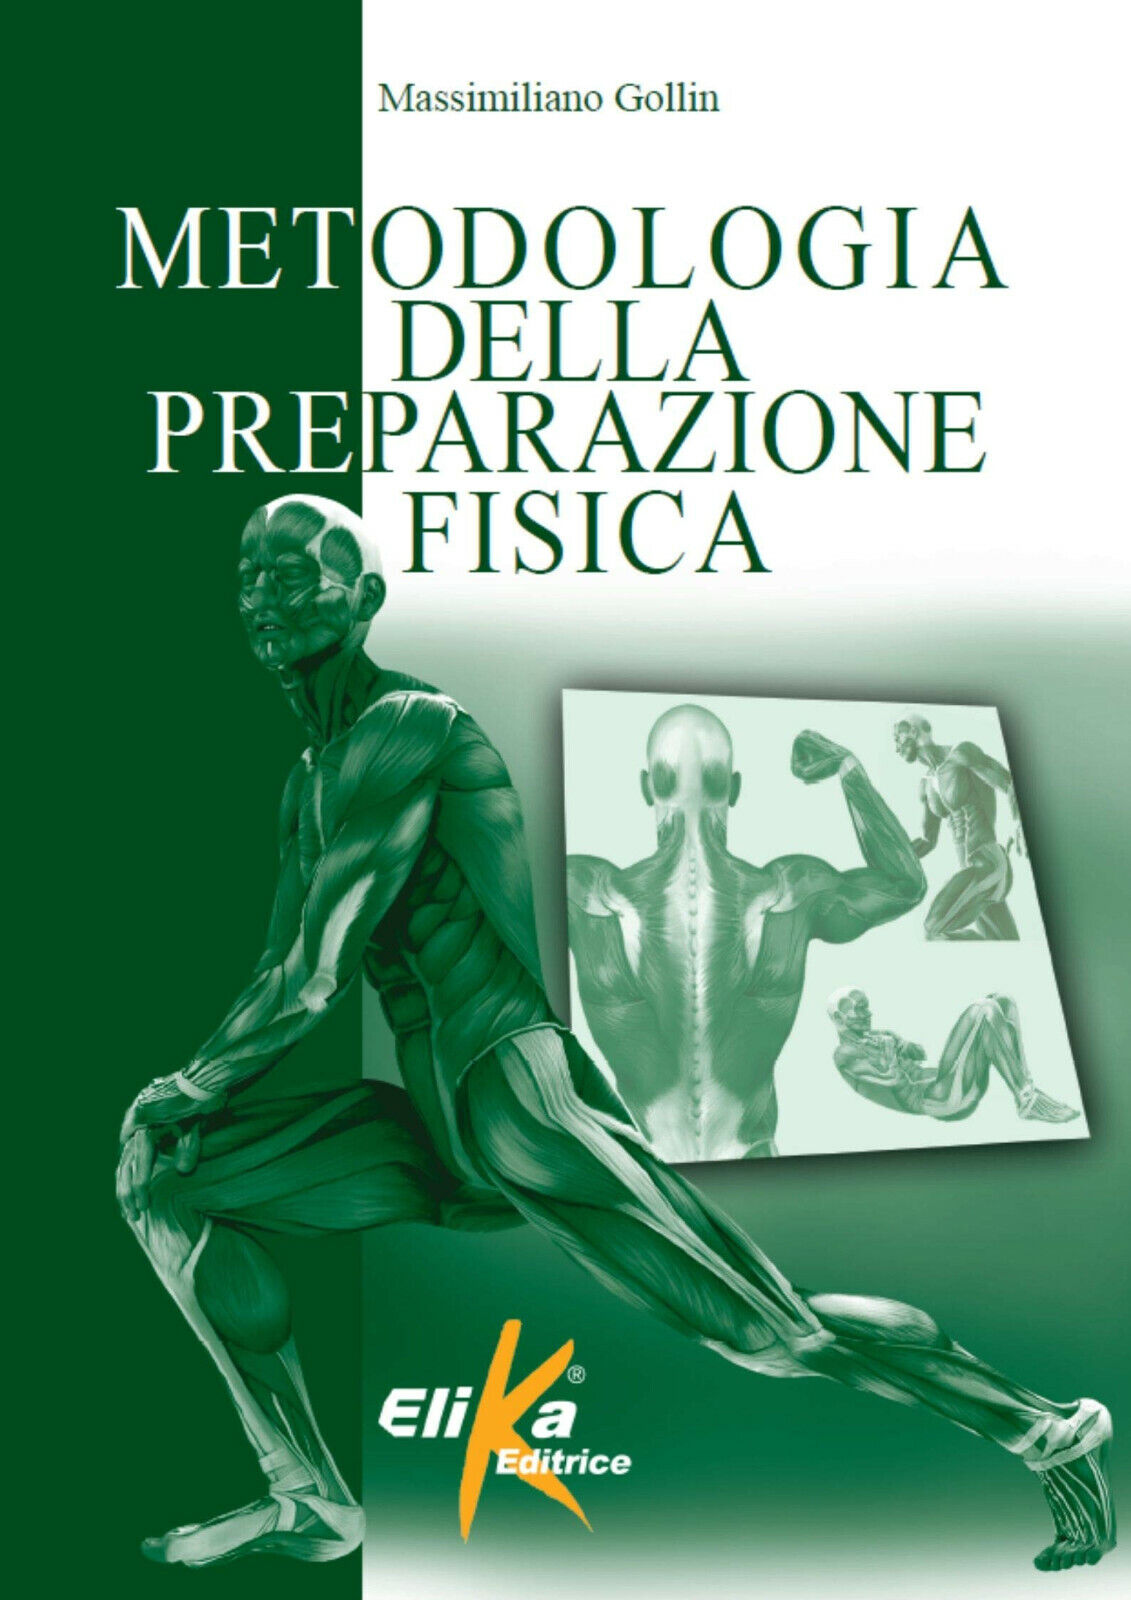 Metodologia della preparazione fisica - Massimiliano Gollin - Elika, 2014